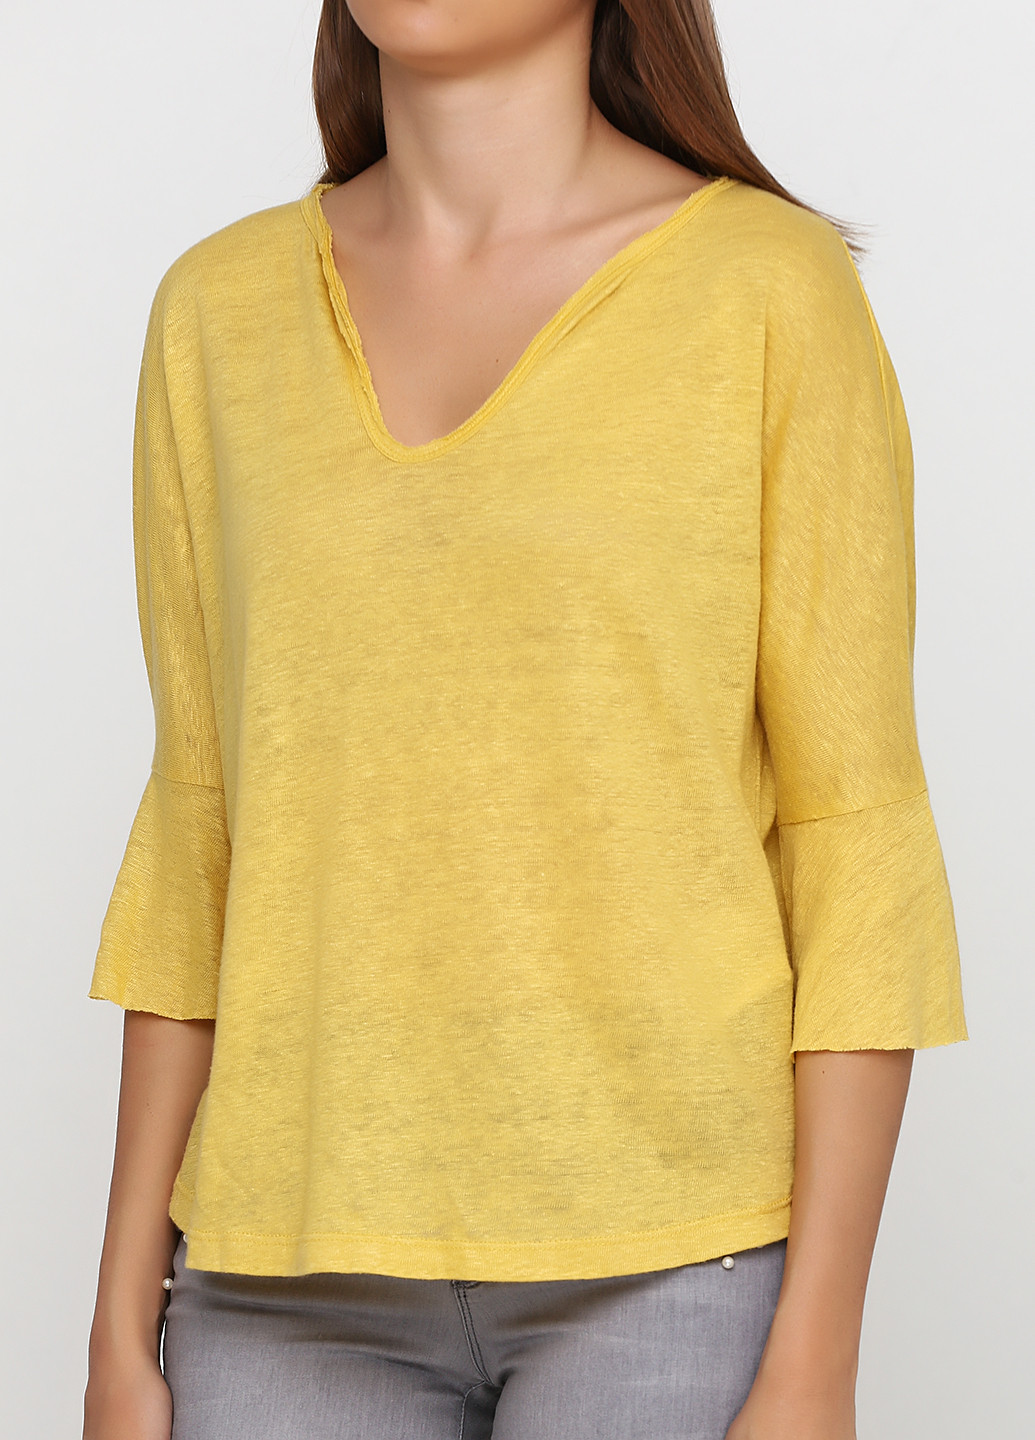 Желтый демисезонный пуловер пуловер Kookai